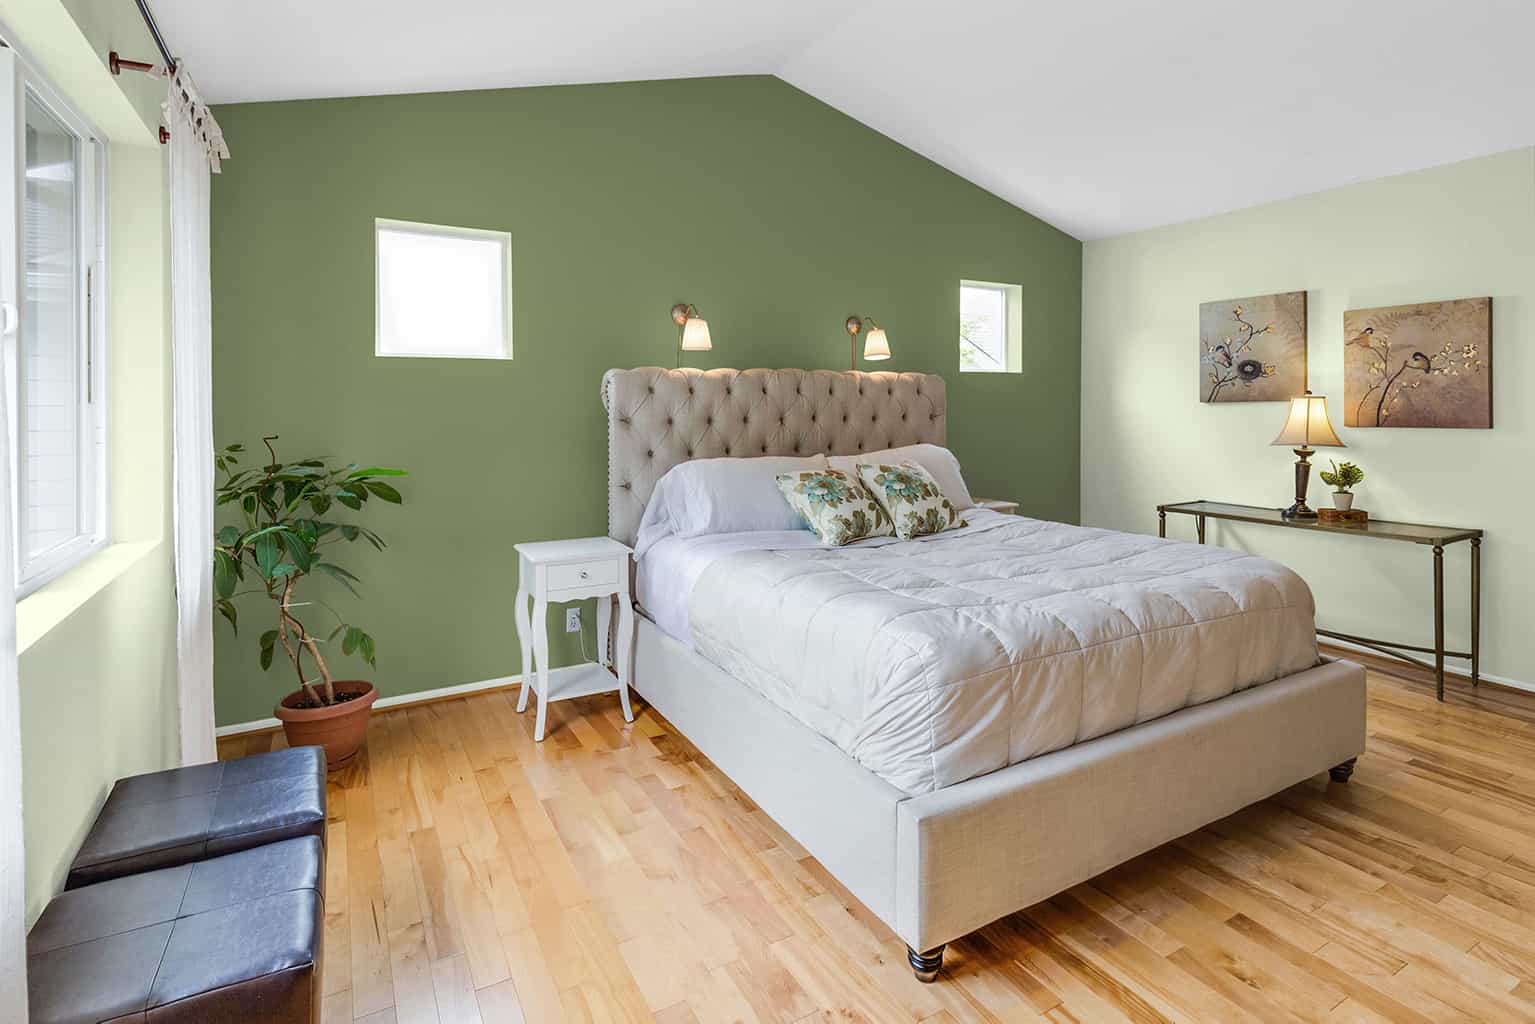 Explore Paint Colors for Bedrooms - PreviewPaint.com